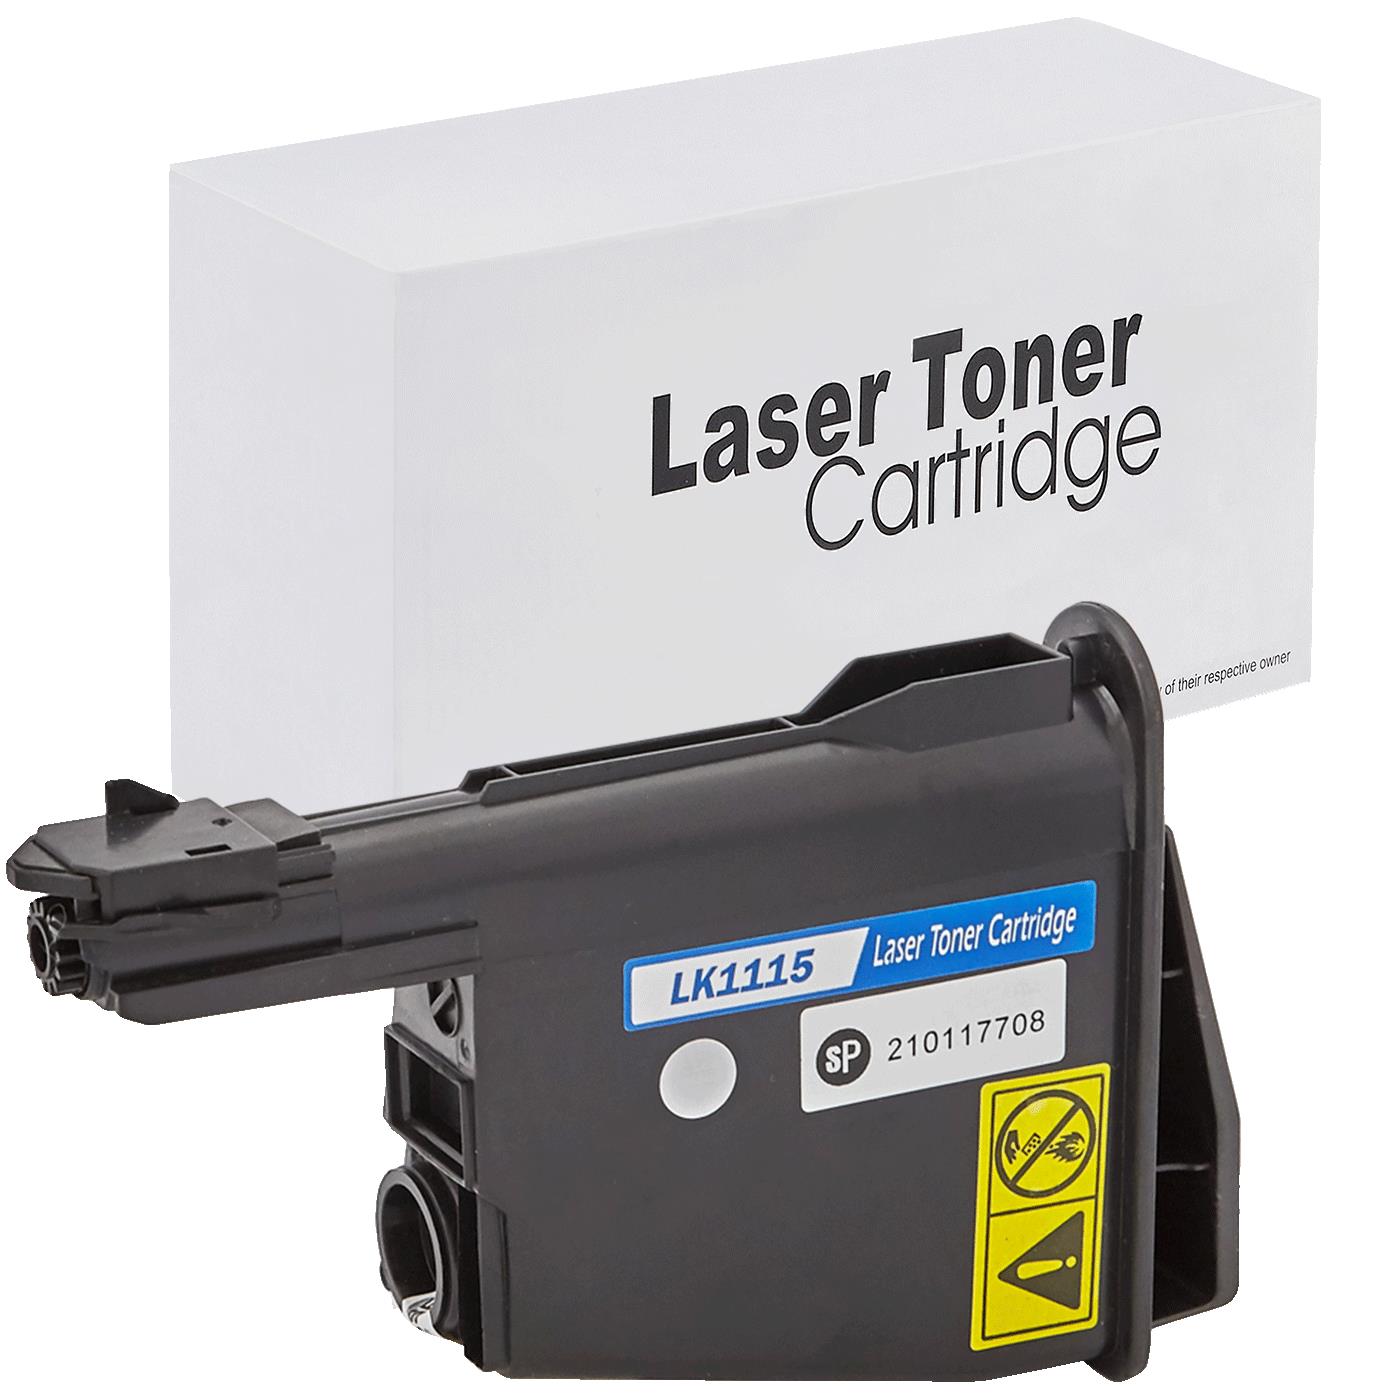 съвместима тонер касета за принтери и печатащи устройства на Kyocera Mita FS 1041 Toner KY-TK1115 | TK1115. Ниски цени, прецизно изпълнение, високо качество.